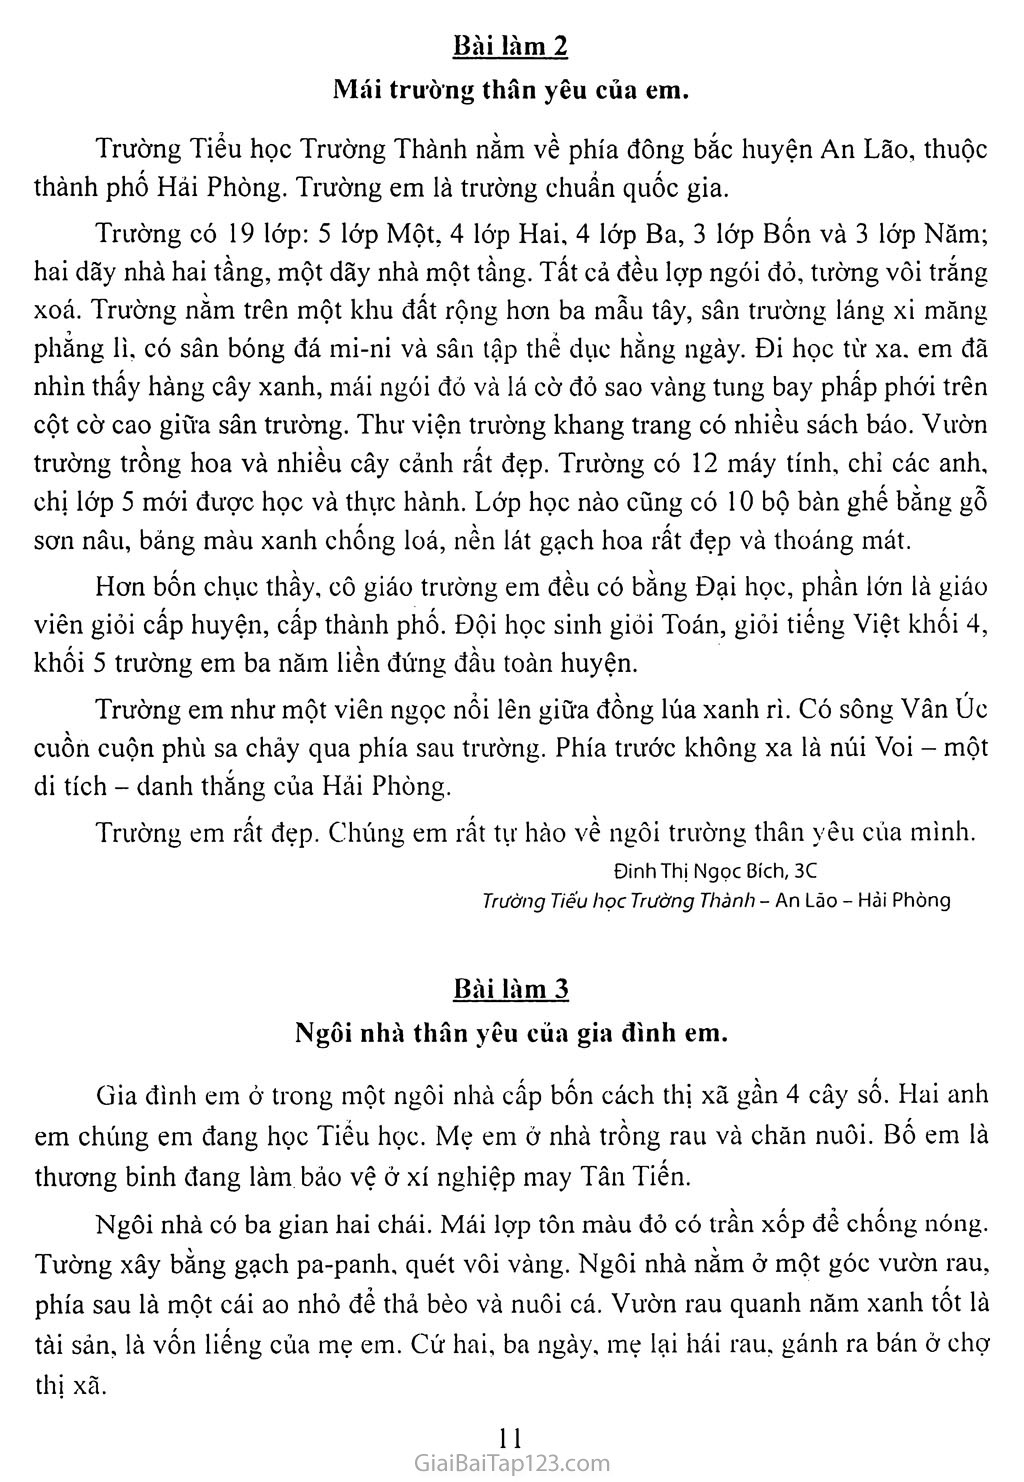 Bạn đang mất thời gian tìm kiếm bài văn mẫu cho bài học tiếng Việt? Hãy dừng lại và xem ngay hình ảnh liên quan để có thêm nhiều bài văn hay và bổ ích, từ đó giúp cải thiện kỹ năng viết của bạn.